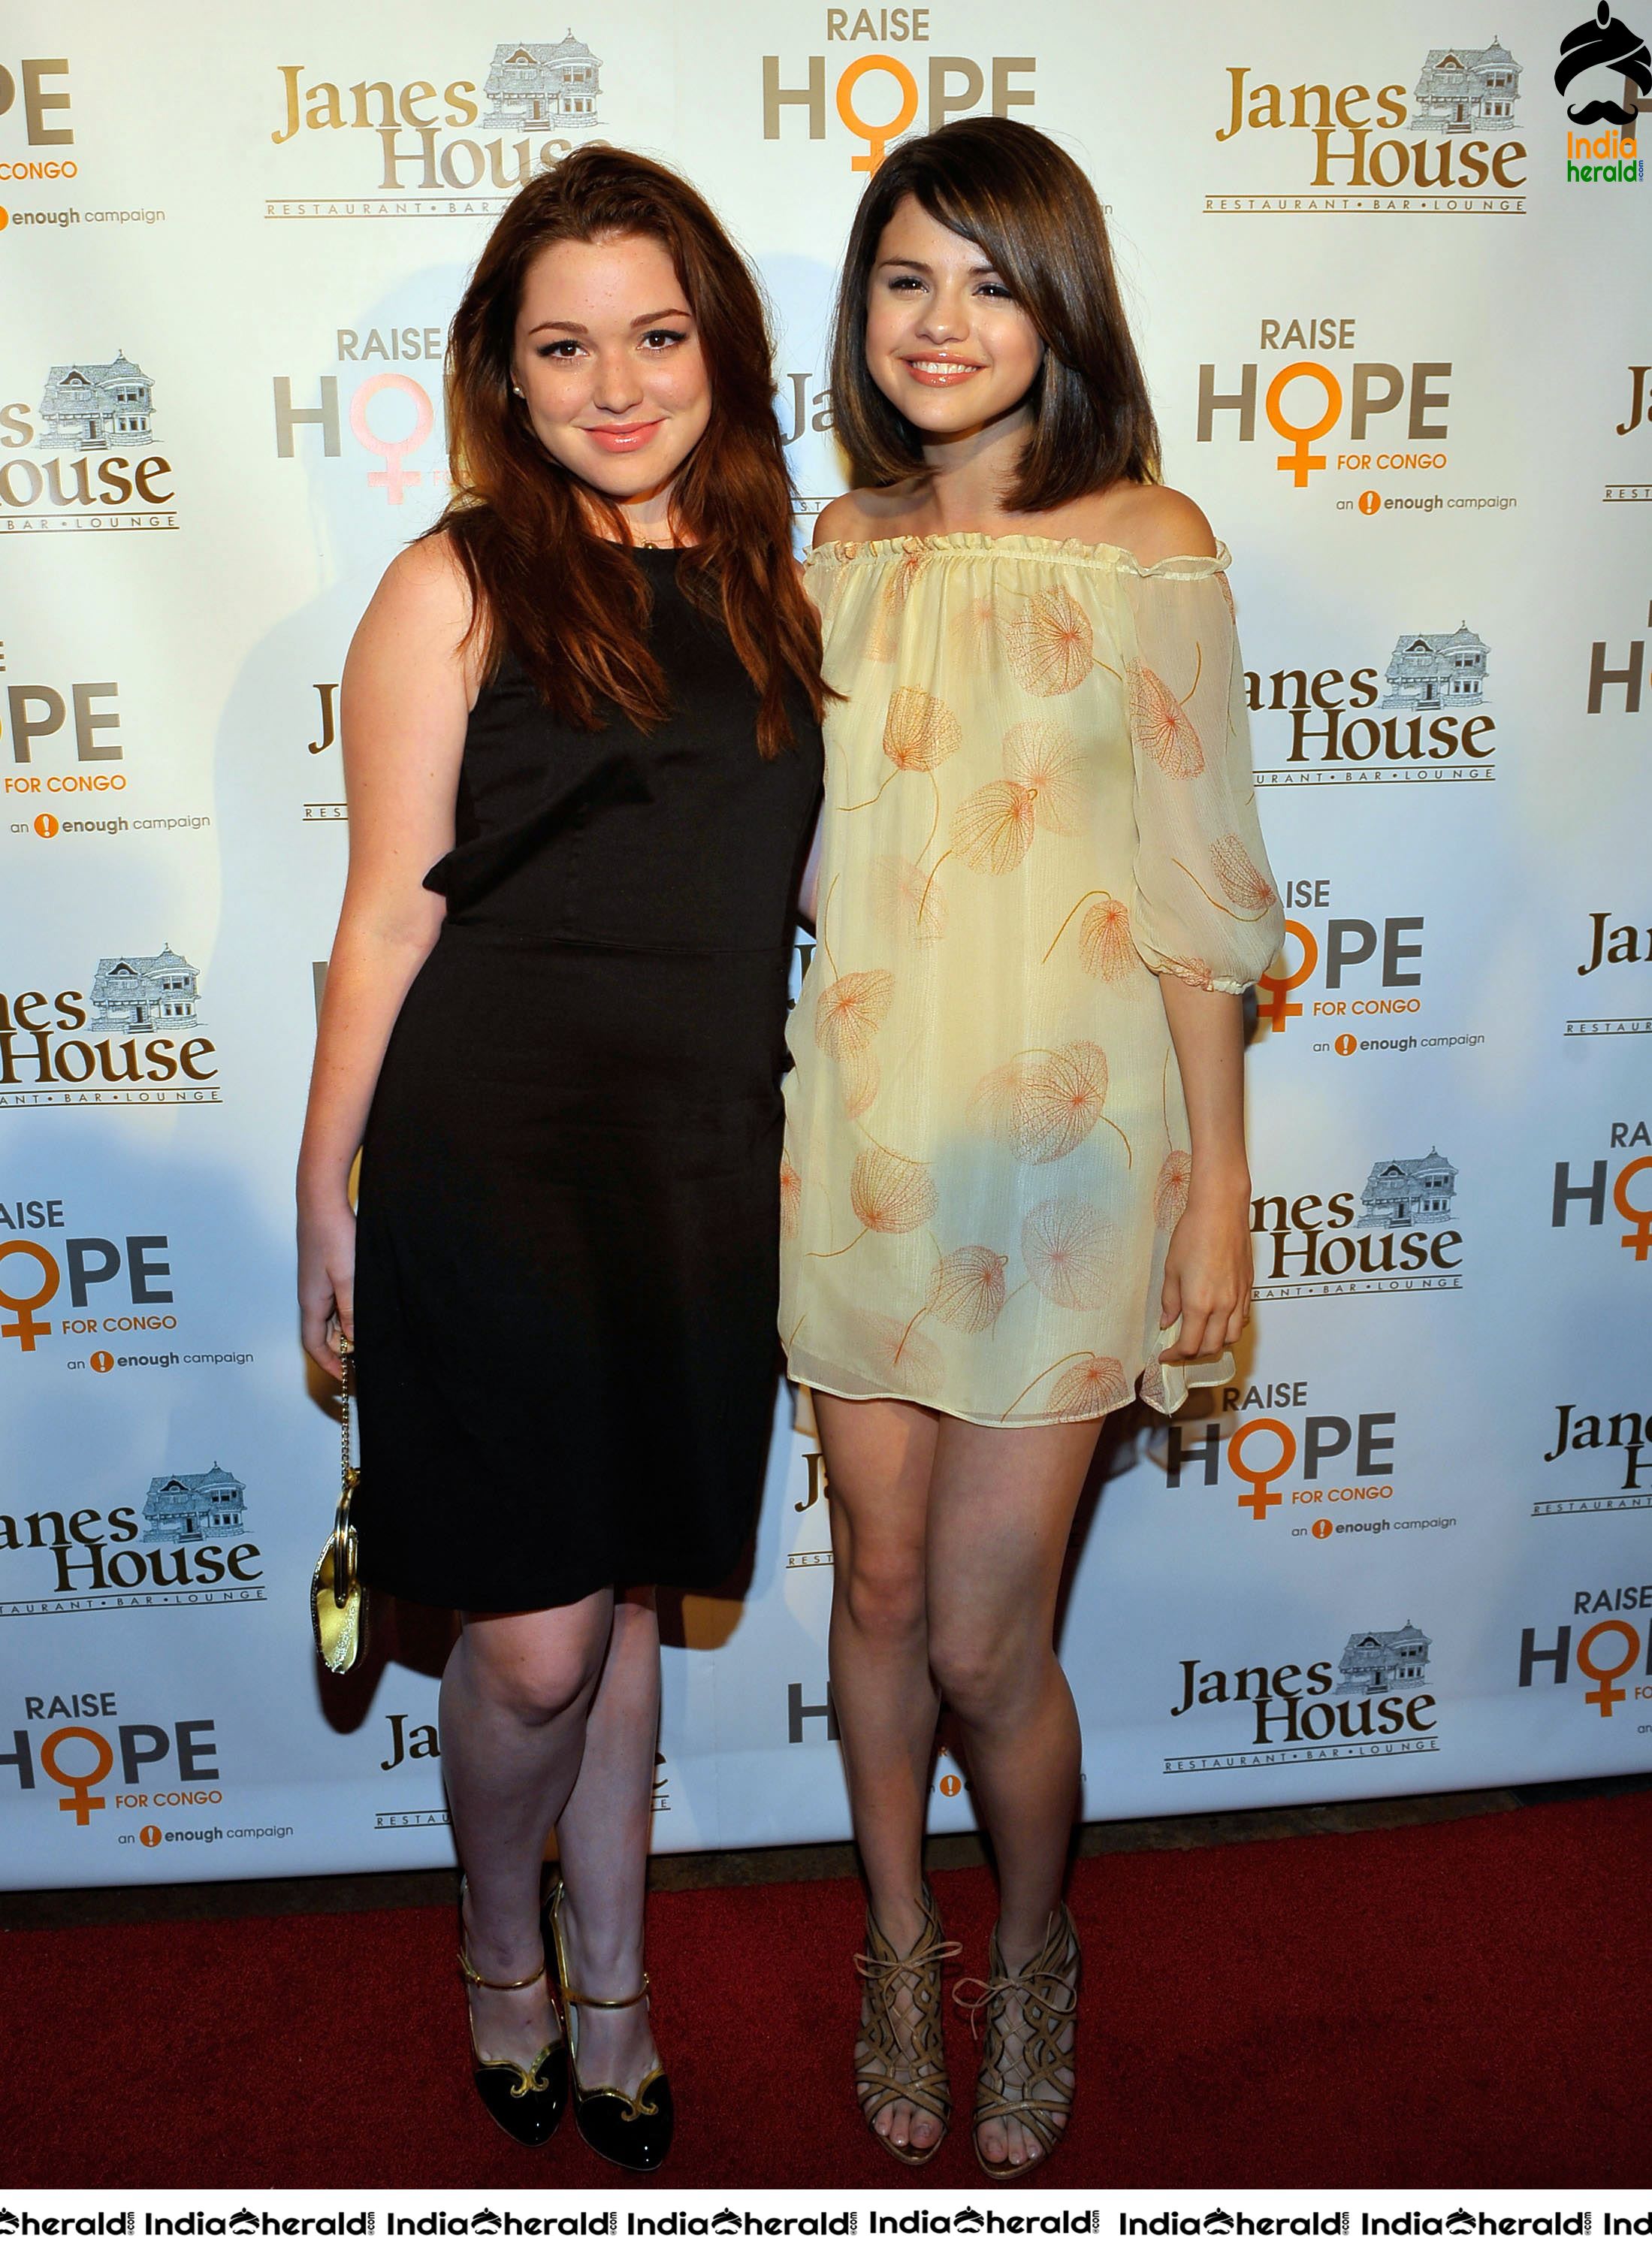 Selena Gomez looks ravishing at Raise Hope for Congo Hollywood event